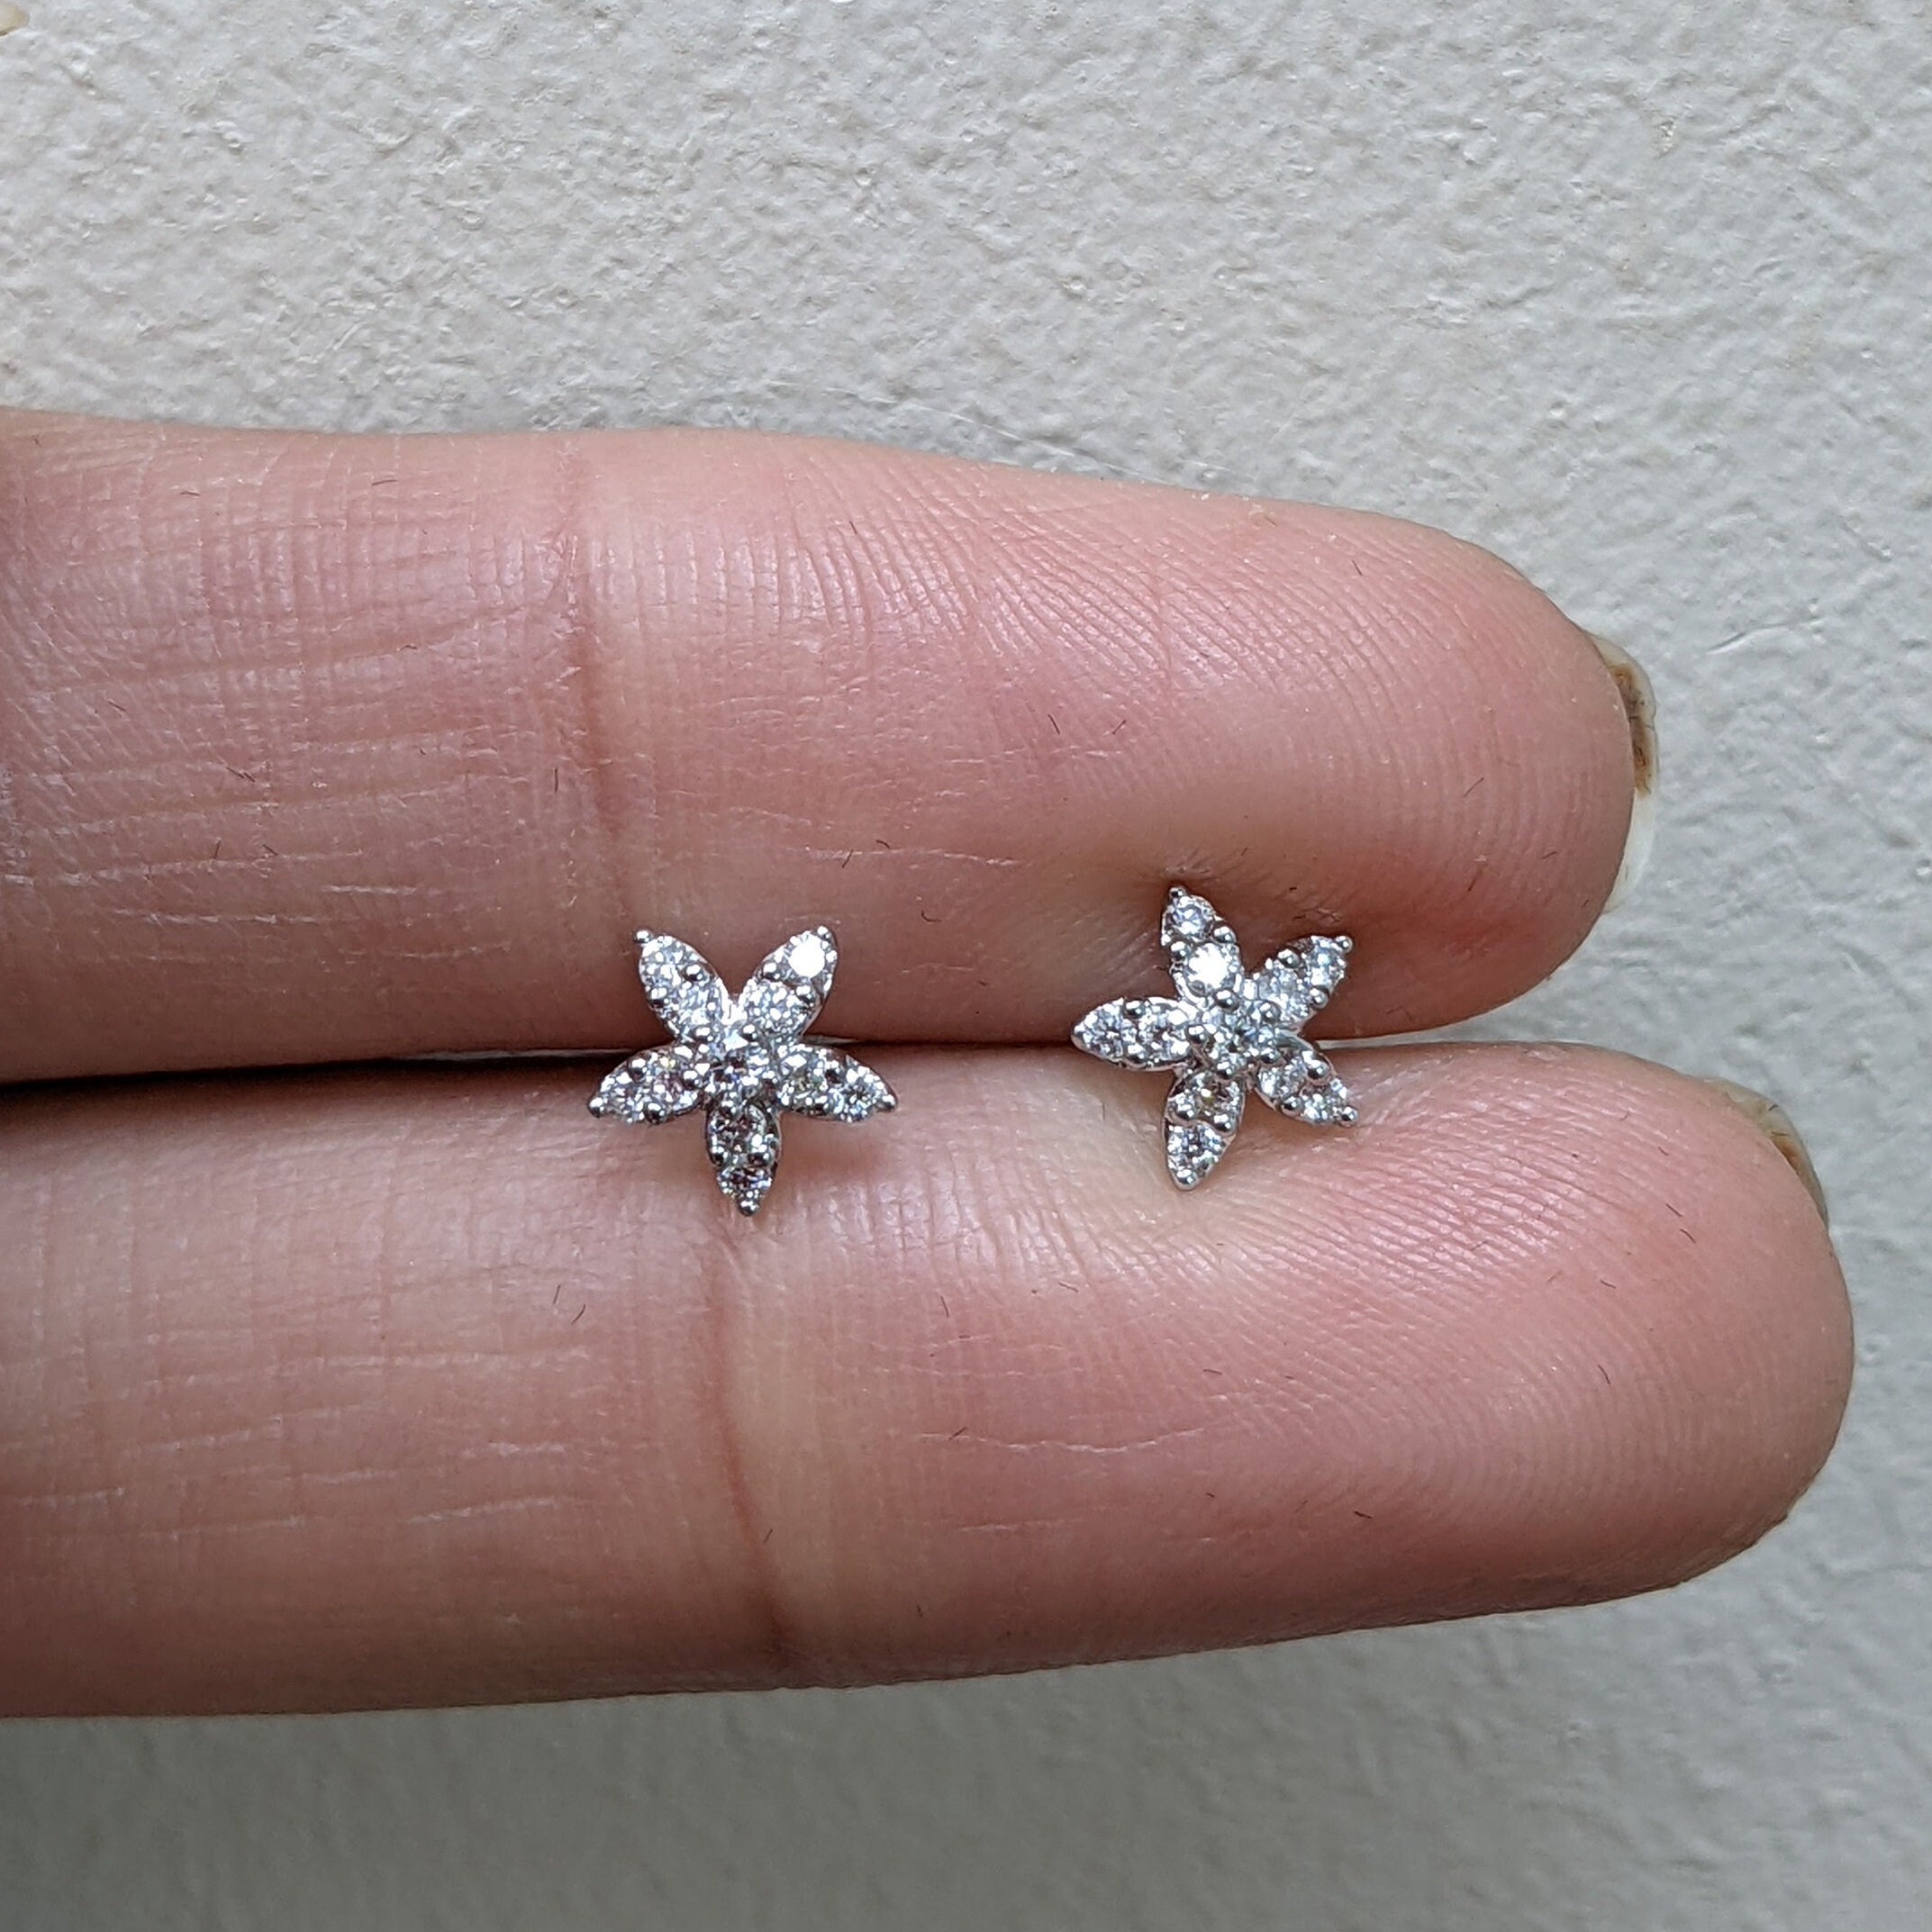  Star Diamond Earrings 18K White Gold 0.99 Carat (F-G-H